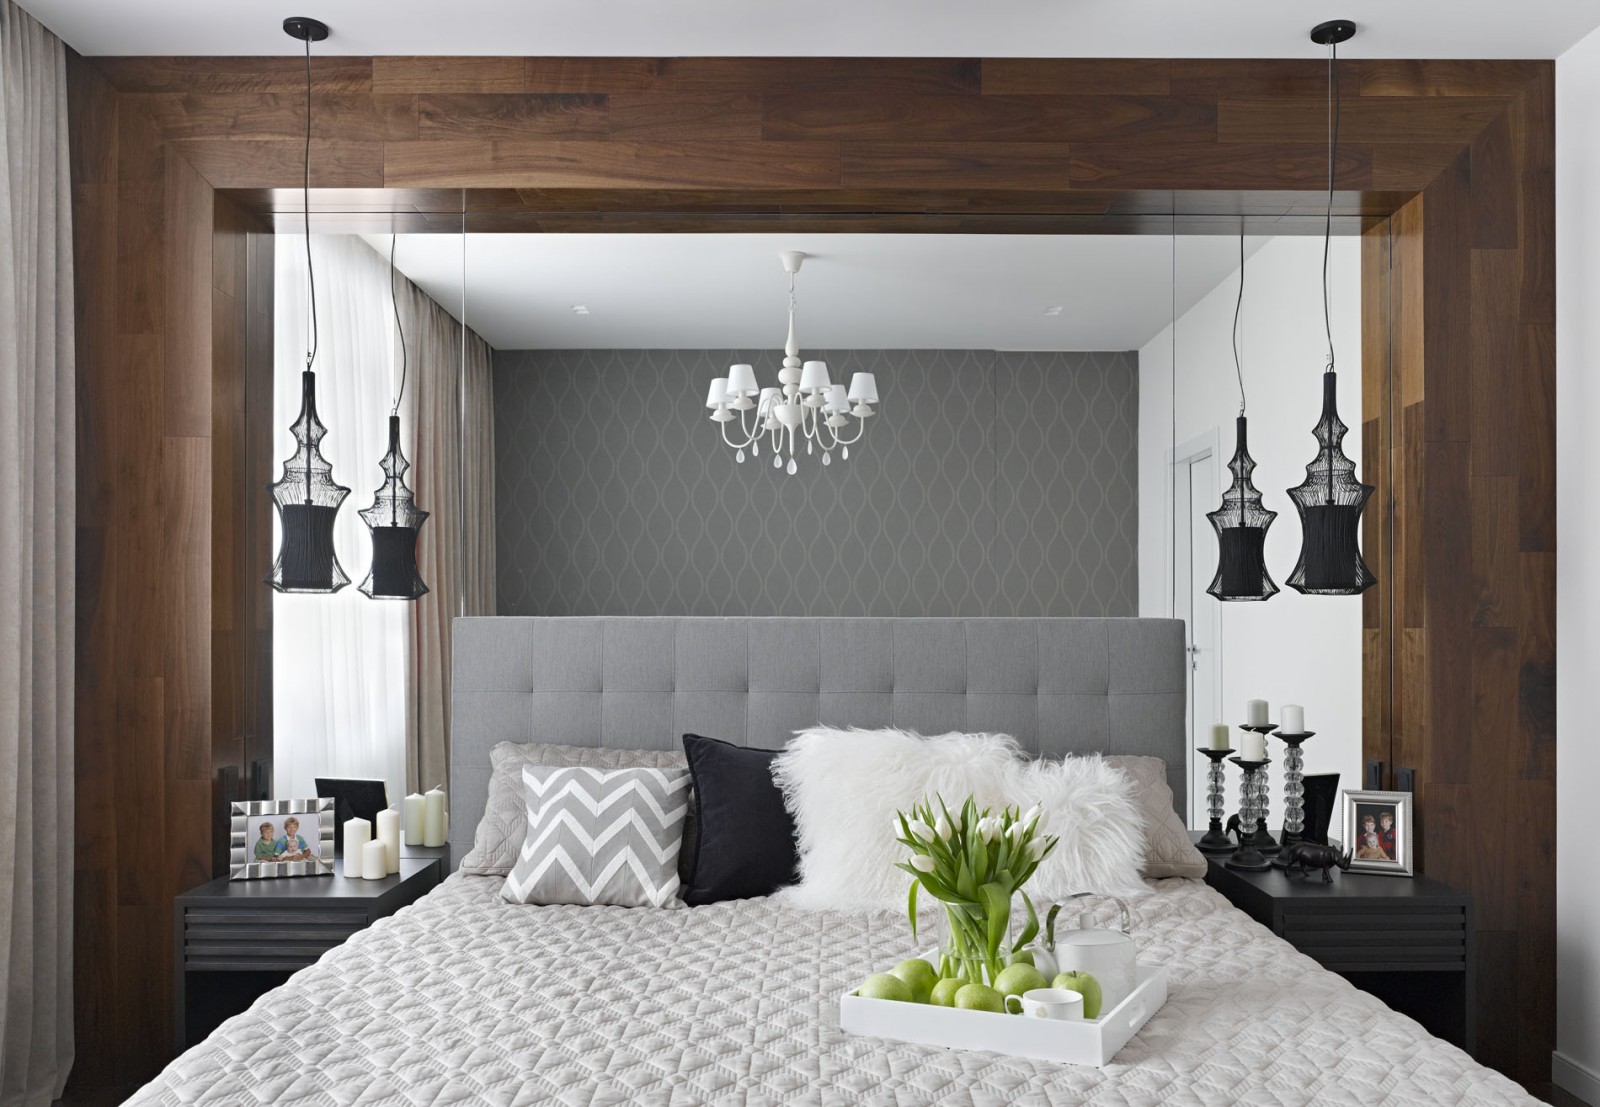 Amazing bedroom ideas from Alexandra Fedorova